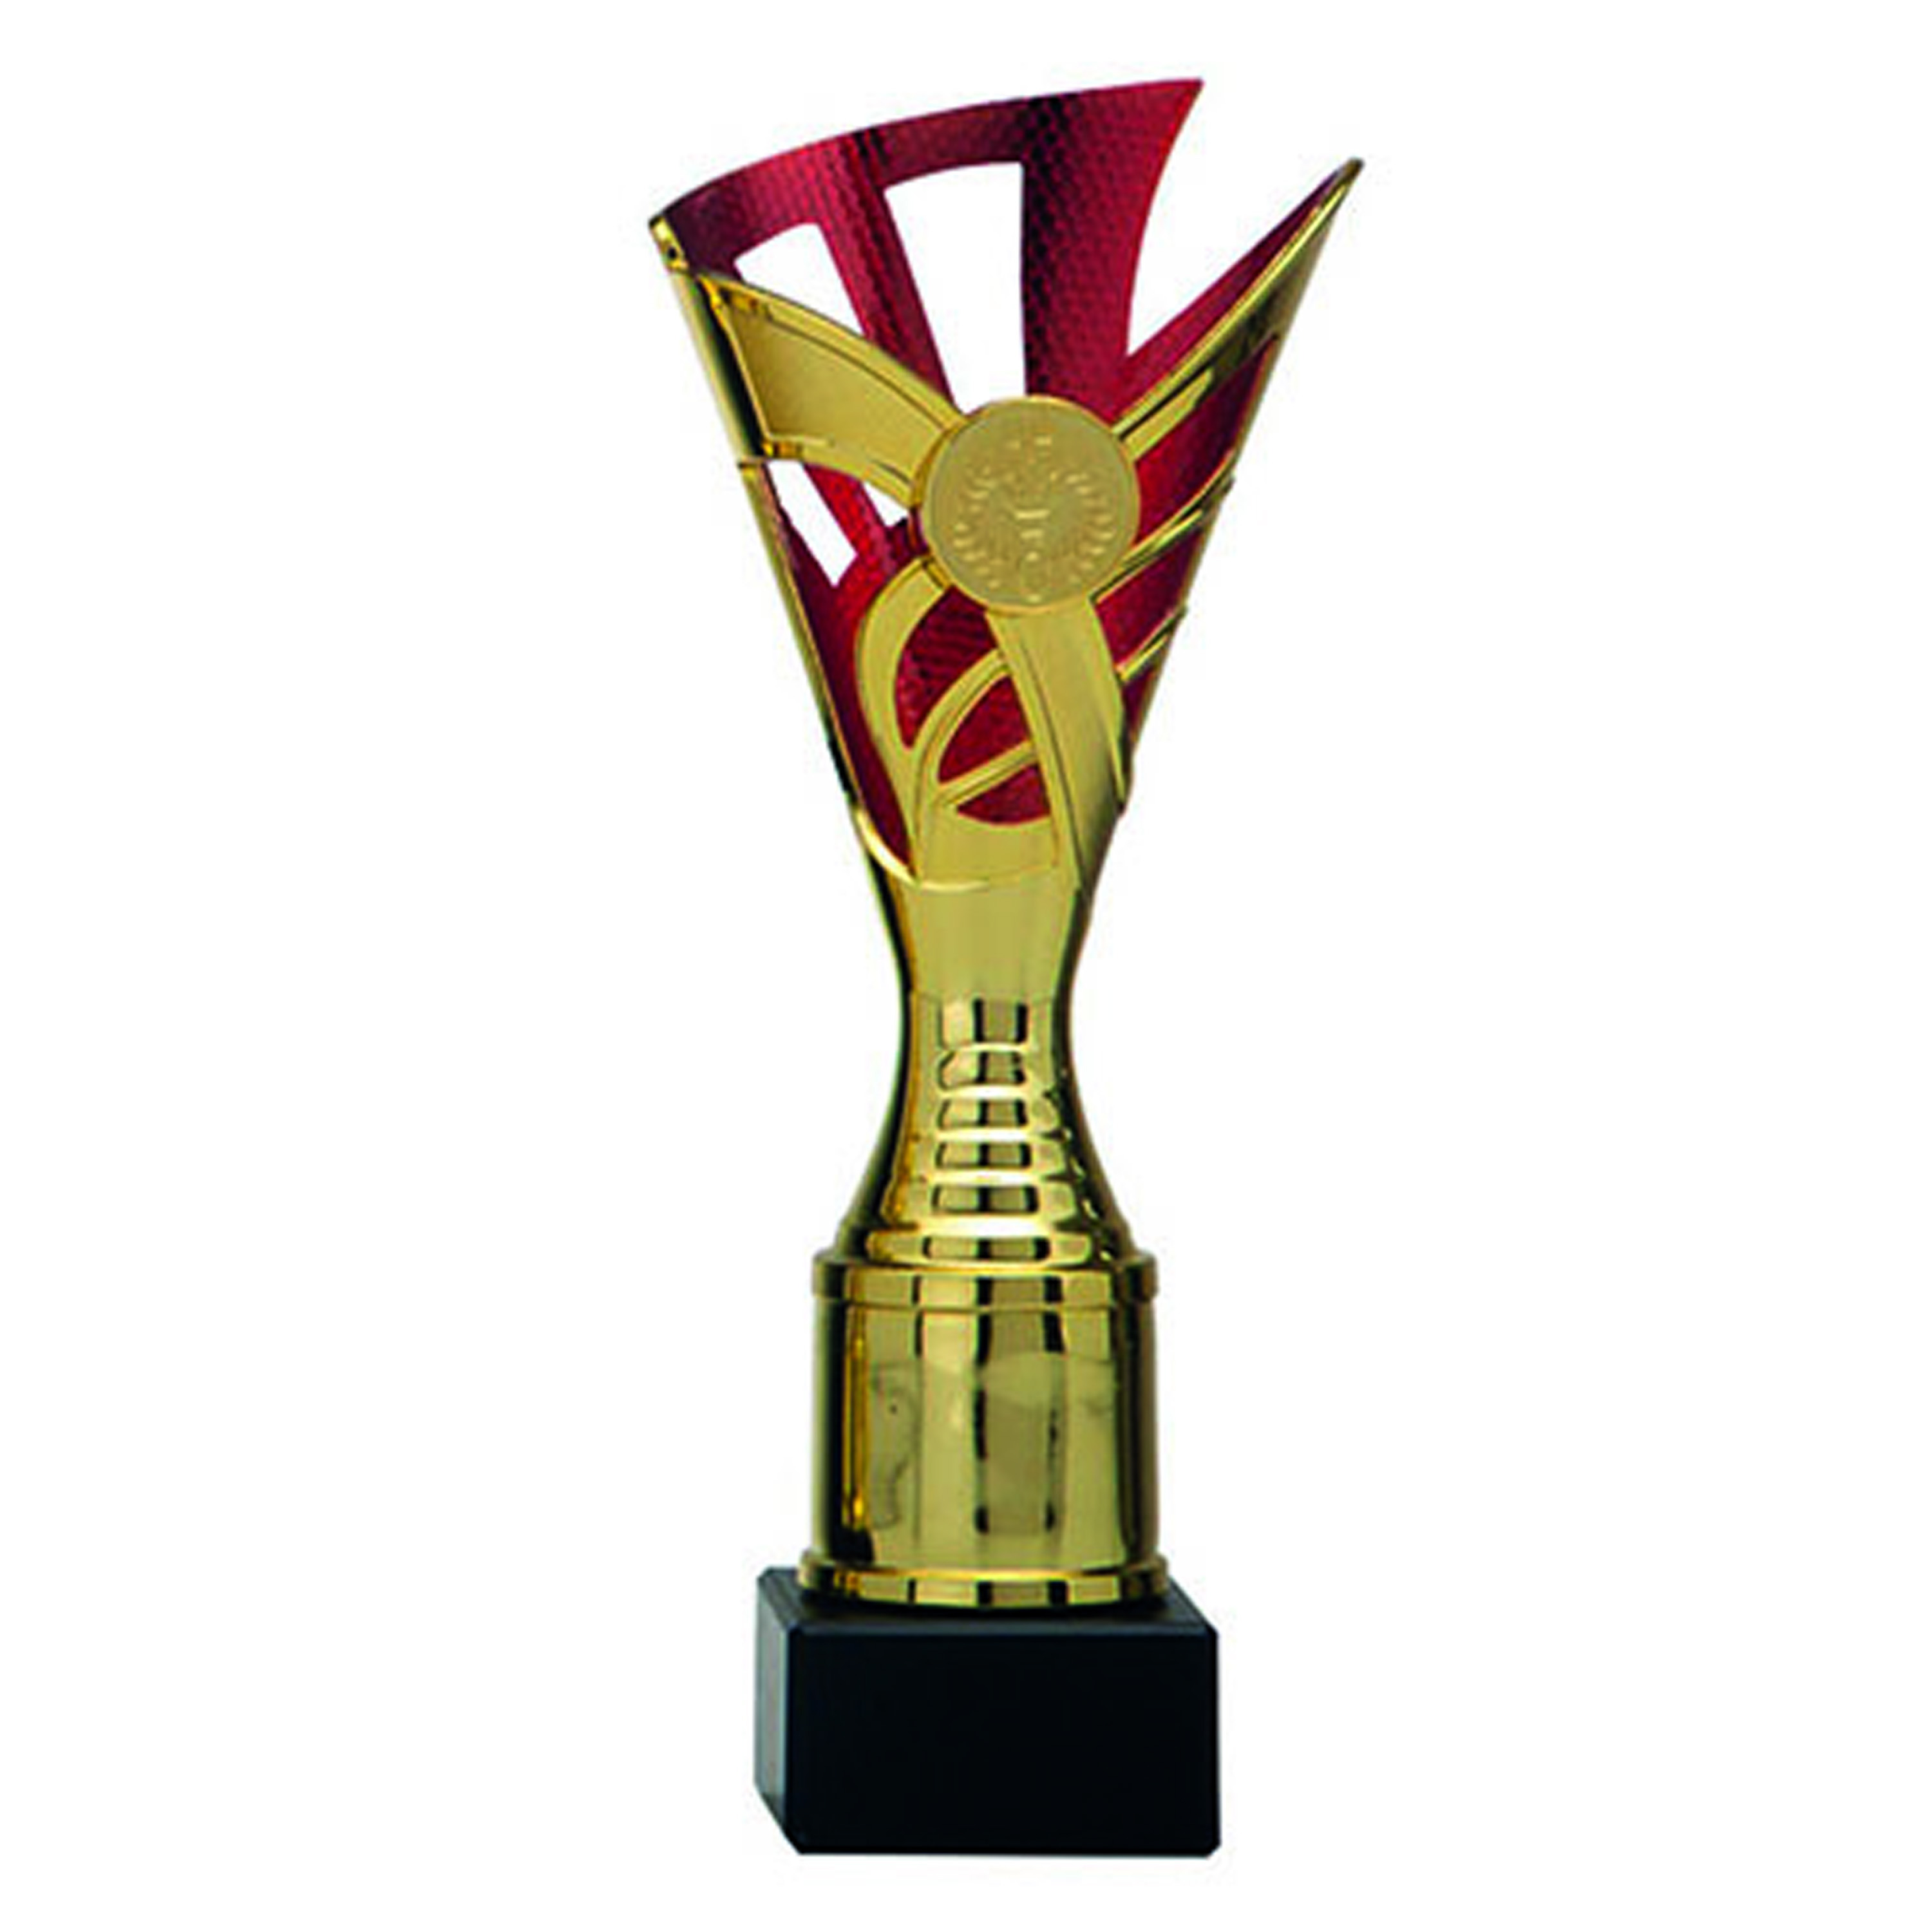 Luxe trofee-prijs beker goud-rood kunststof 18,5 x 9 cmÂ? sportprijs